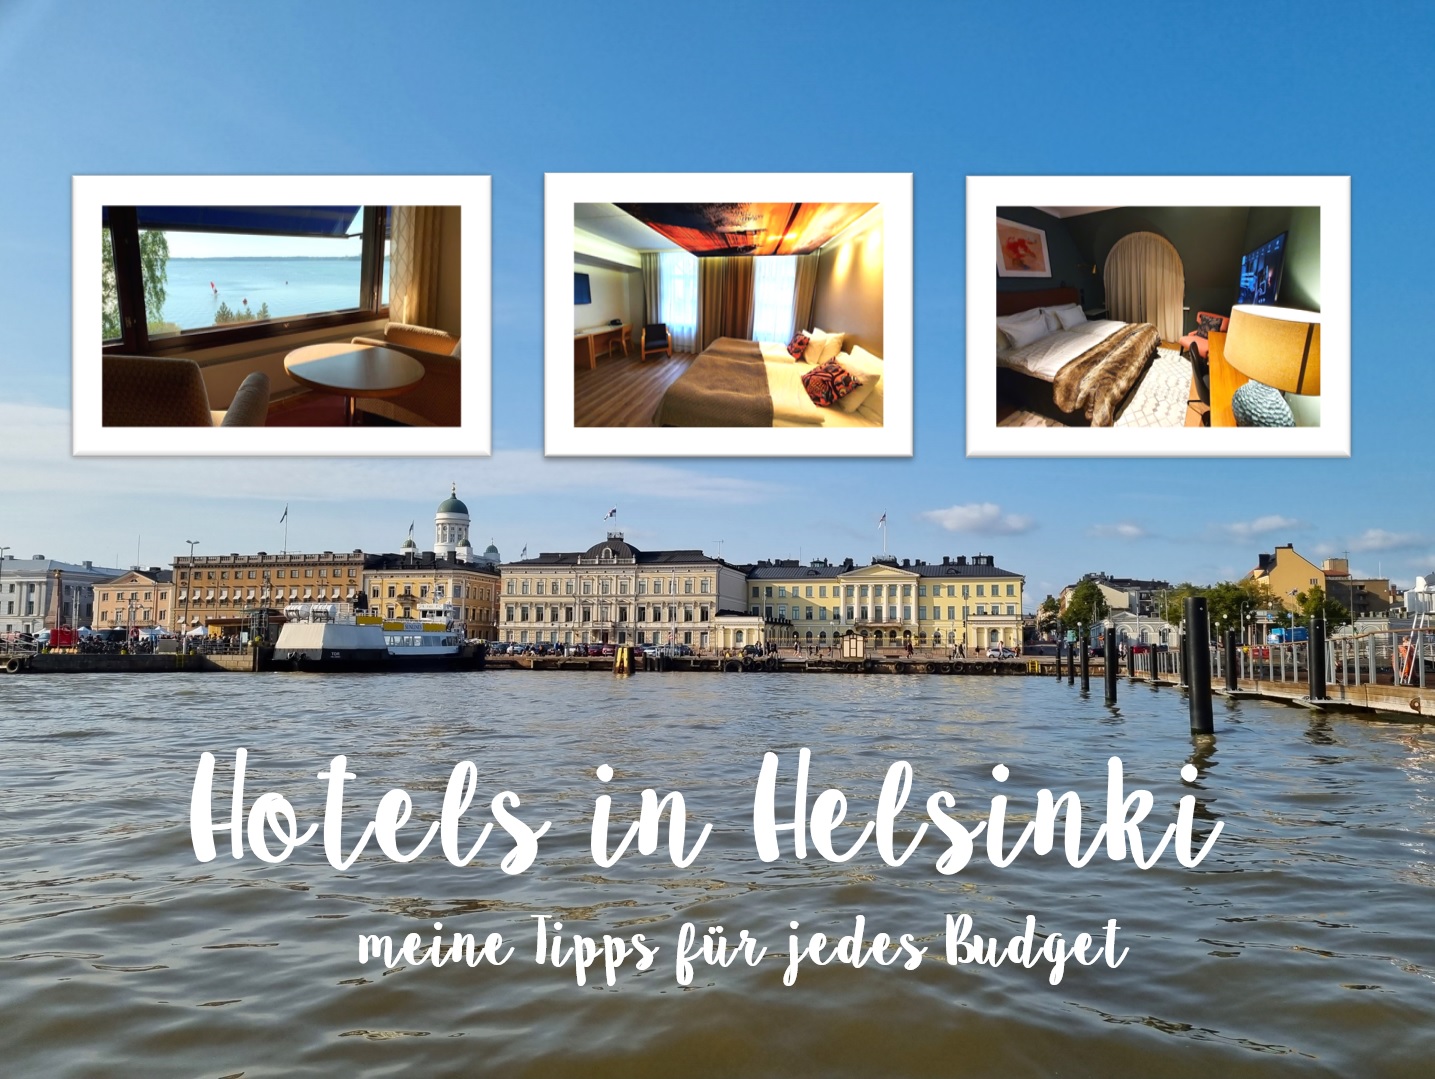 zu meinen Hoteltipps für Helsinki